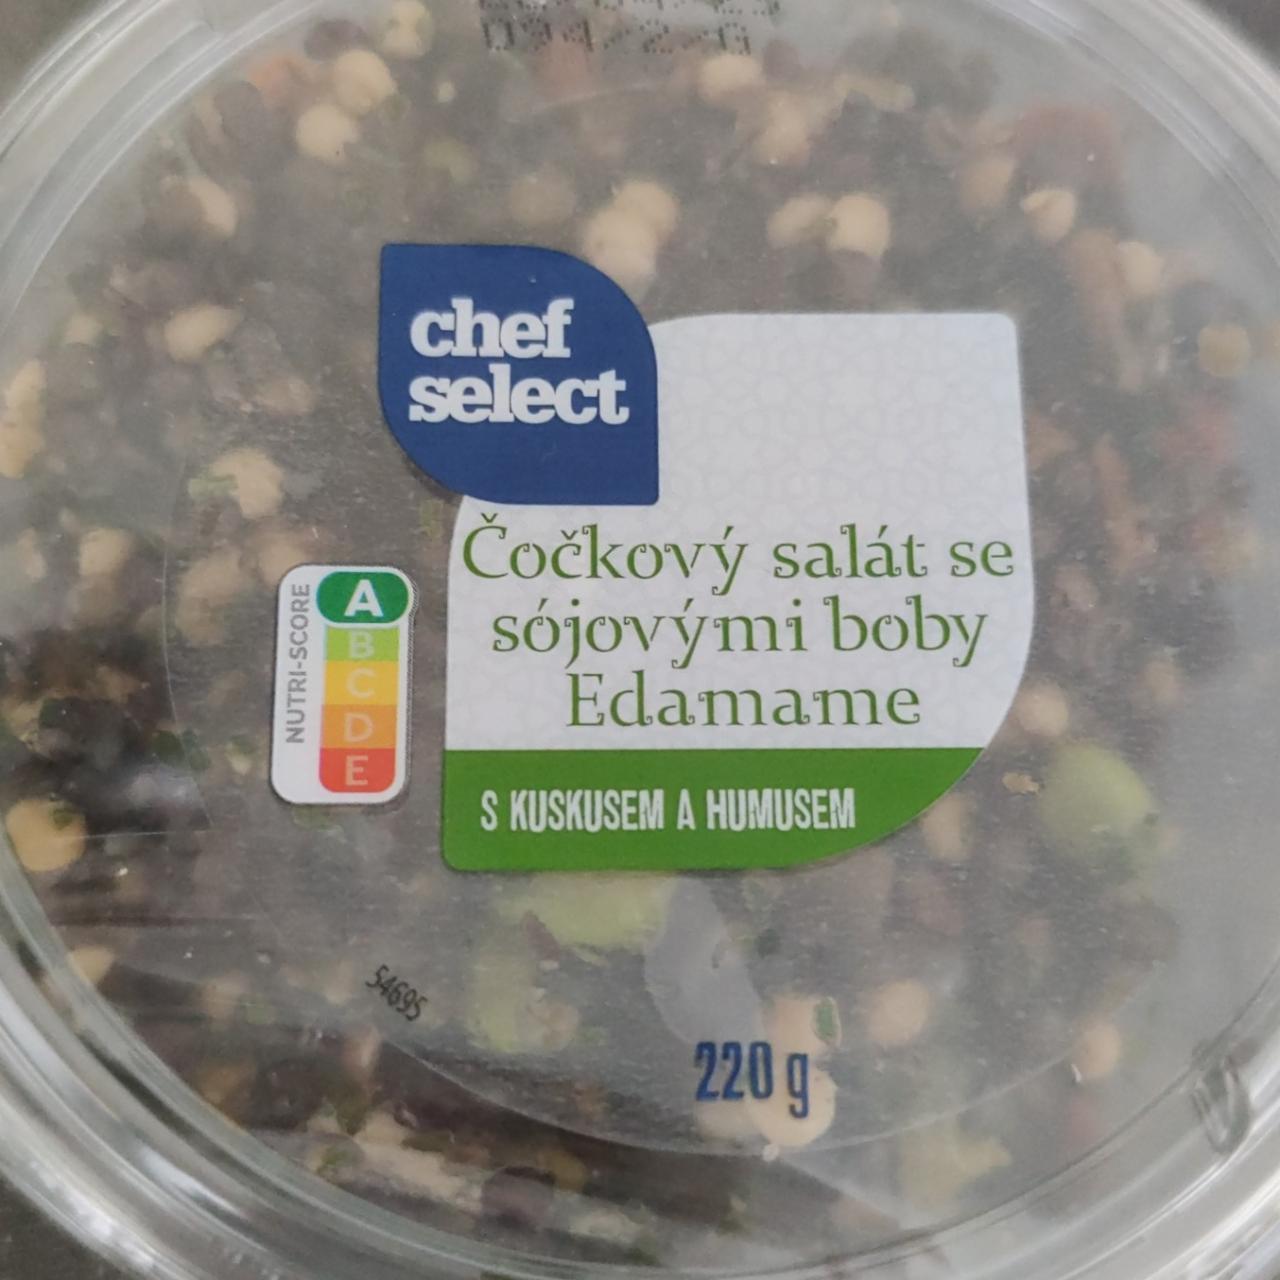 Fotografie - Čočkový salát se sójovými boby Edamame s kuskusem a humusem Chef Select